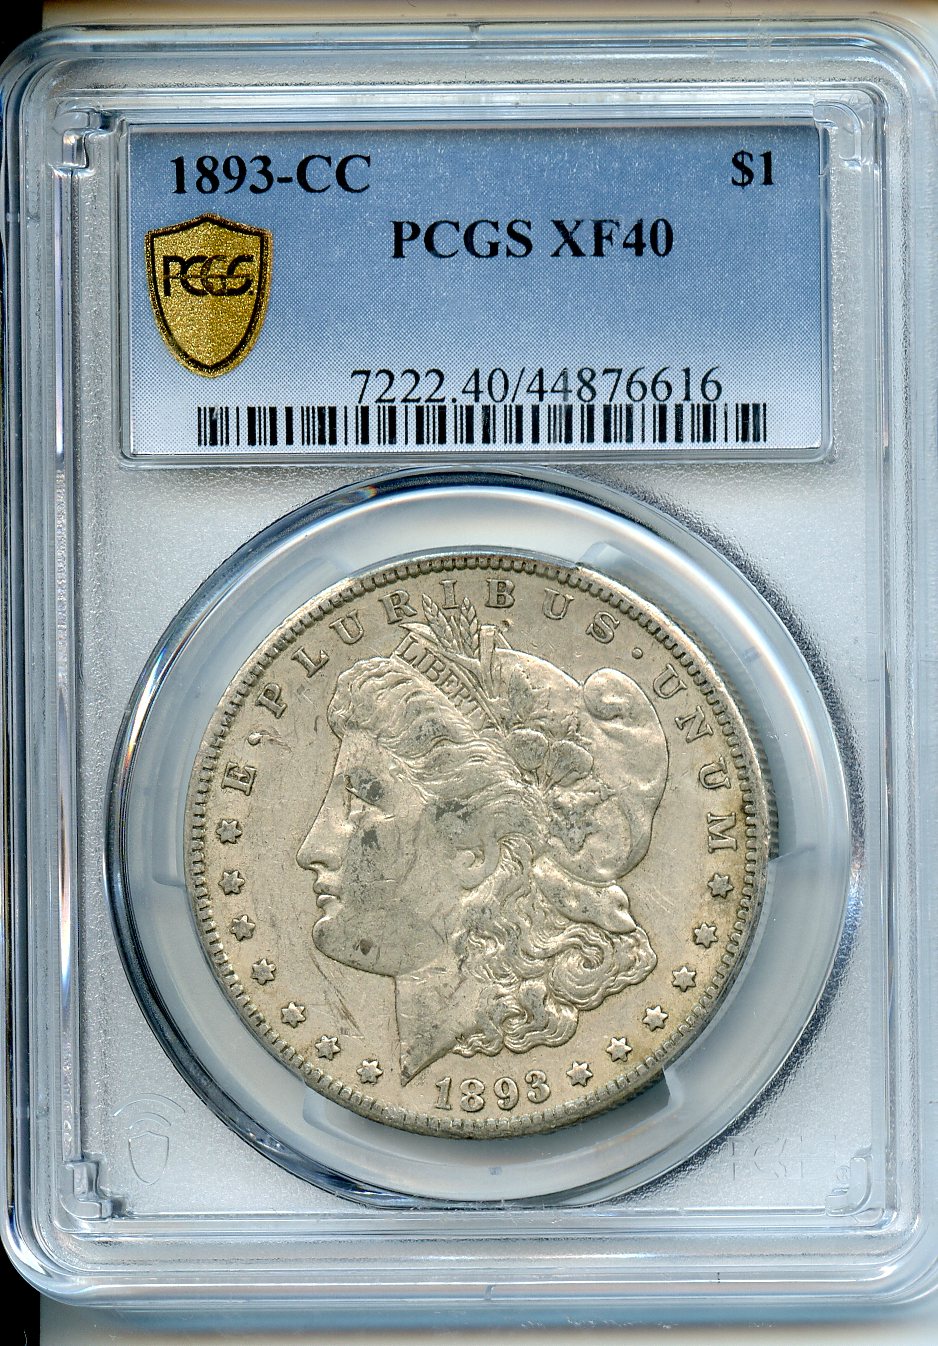 1893 CC  $1  PCGS  XF40  Morgan Dollar